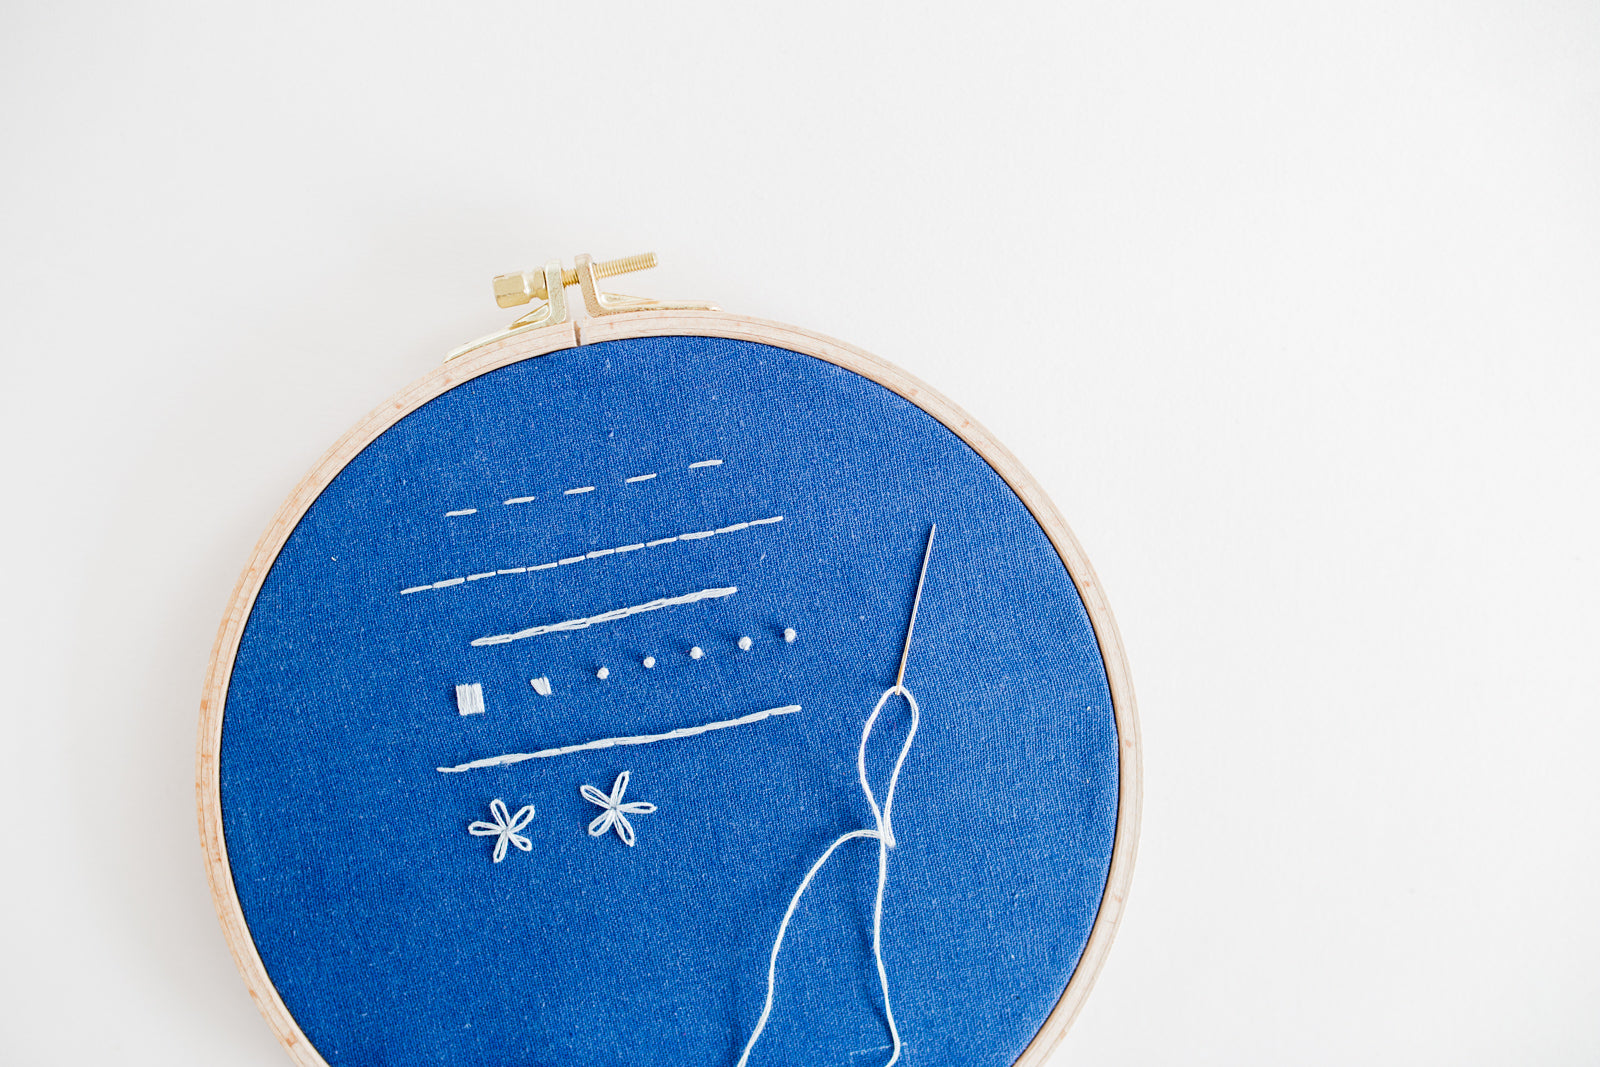 Eik weduwnaar Aardappelen Leren borduren: De Basis Borduursteken | Learn to embroider: The Basic –  Splendith